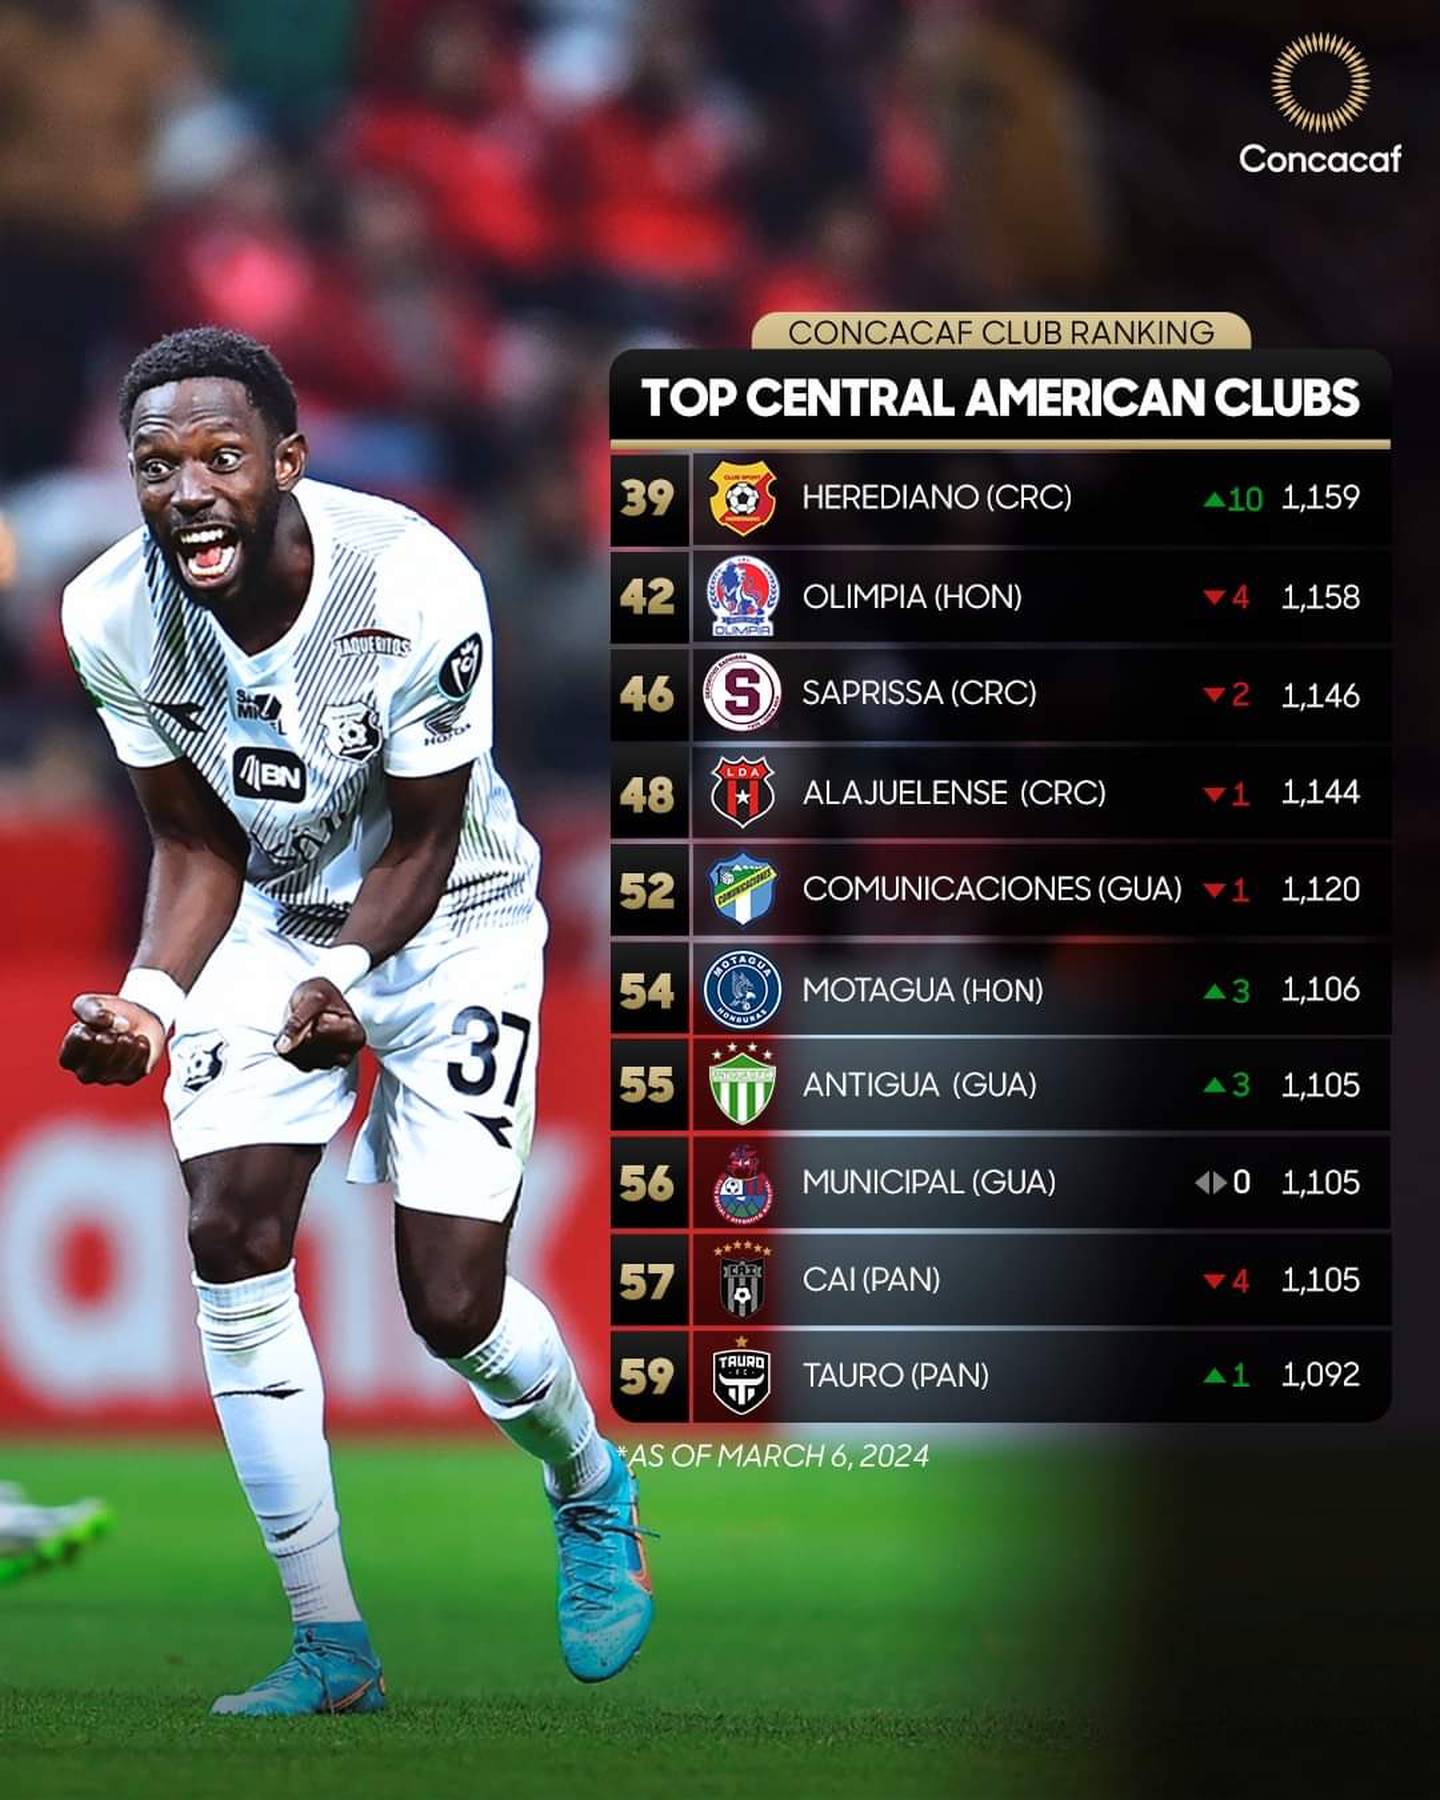 Herediano es el mejor equipo de Centroamérica según el ranking de clubes de la Concacaf. Foto: Twitter Concacaf